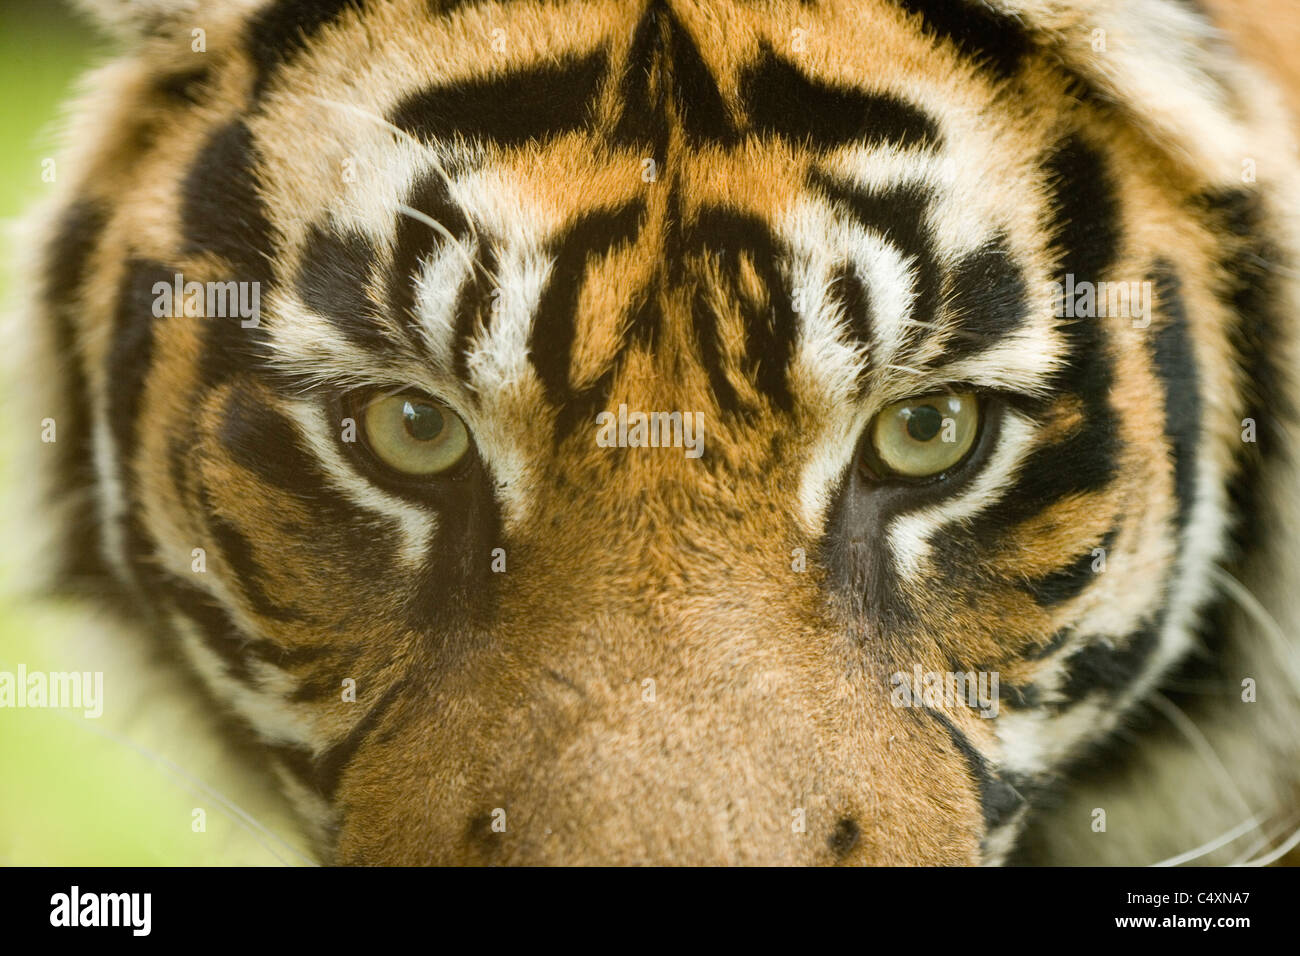 Tigre de Sumatra (Panthera tigris sumatrae). Los ojos, de cabeza, mostrando capacidad de visión estereoscópica. Foto de stock